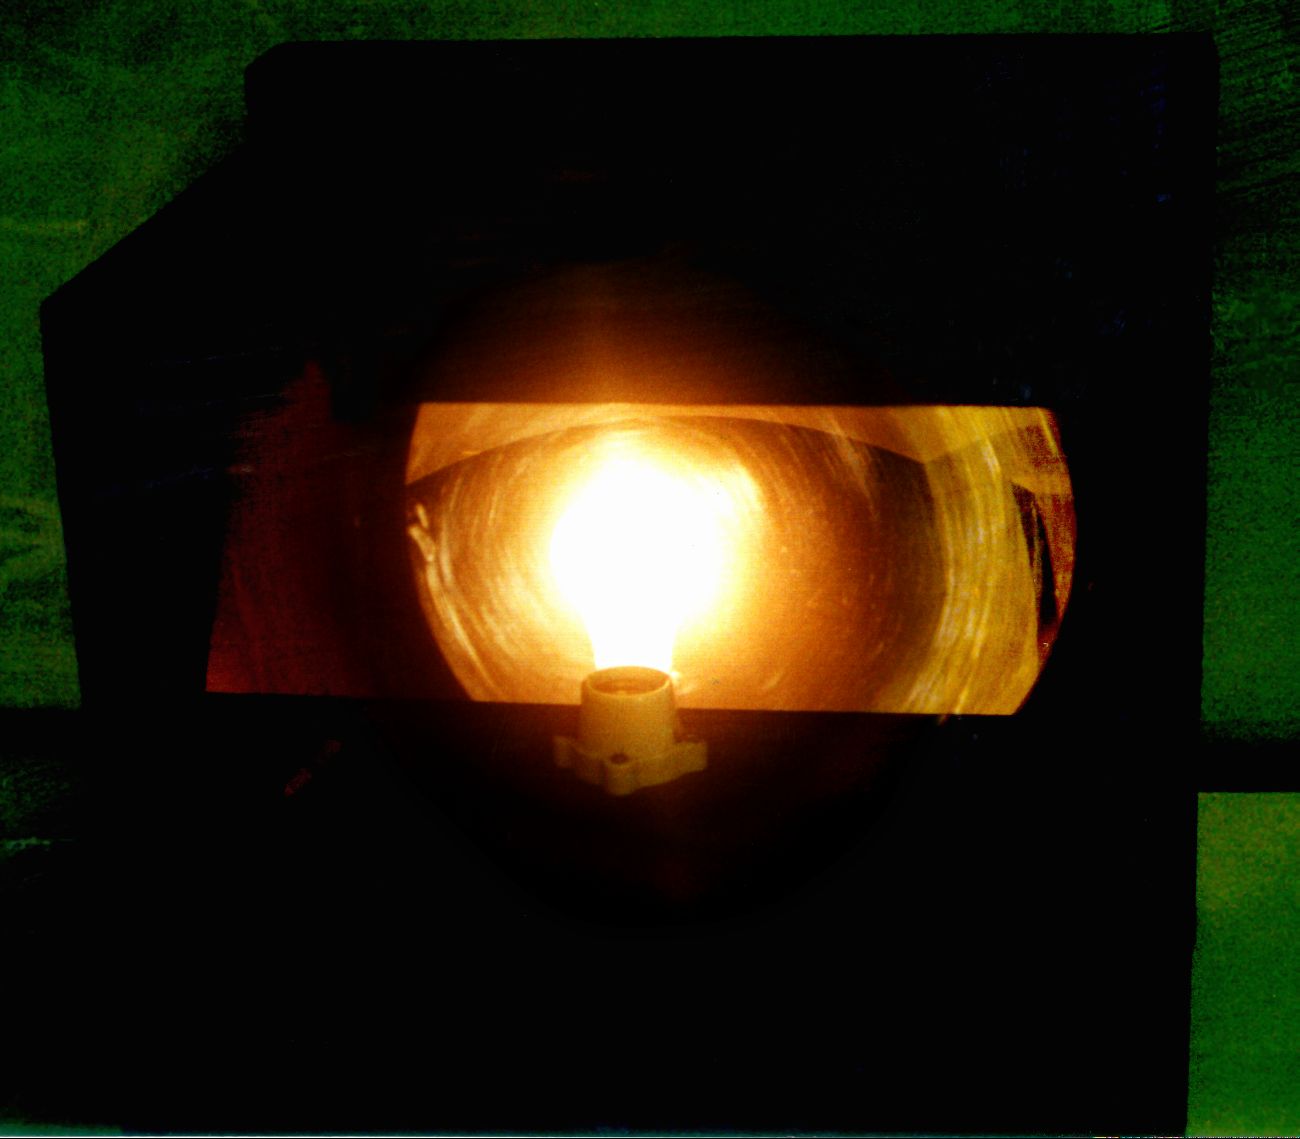 pix of bulb image